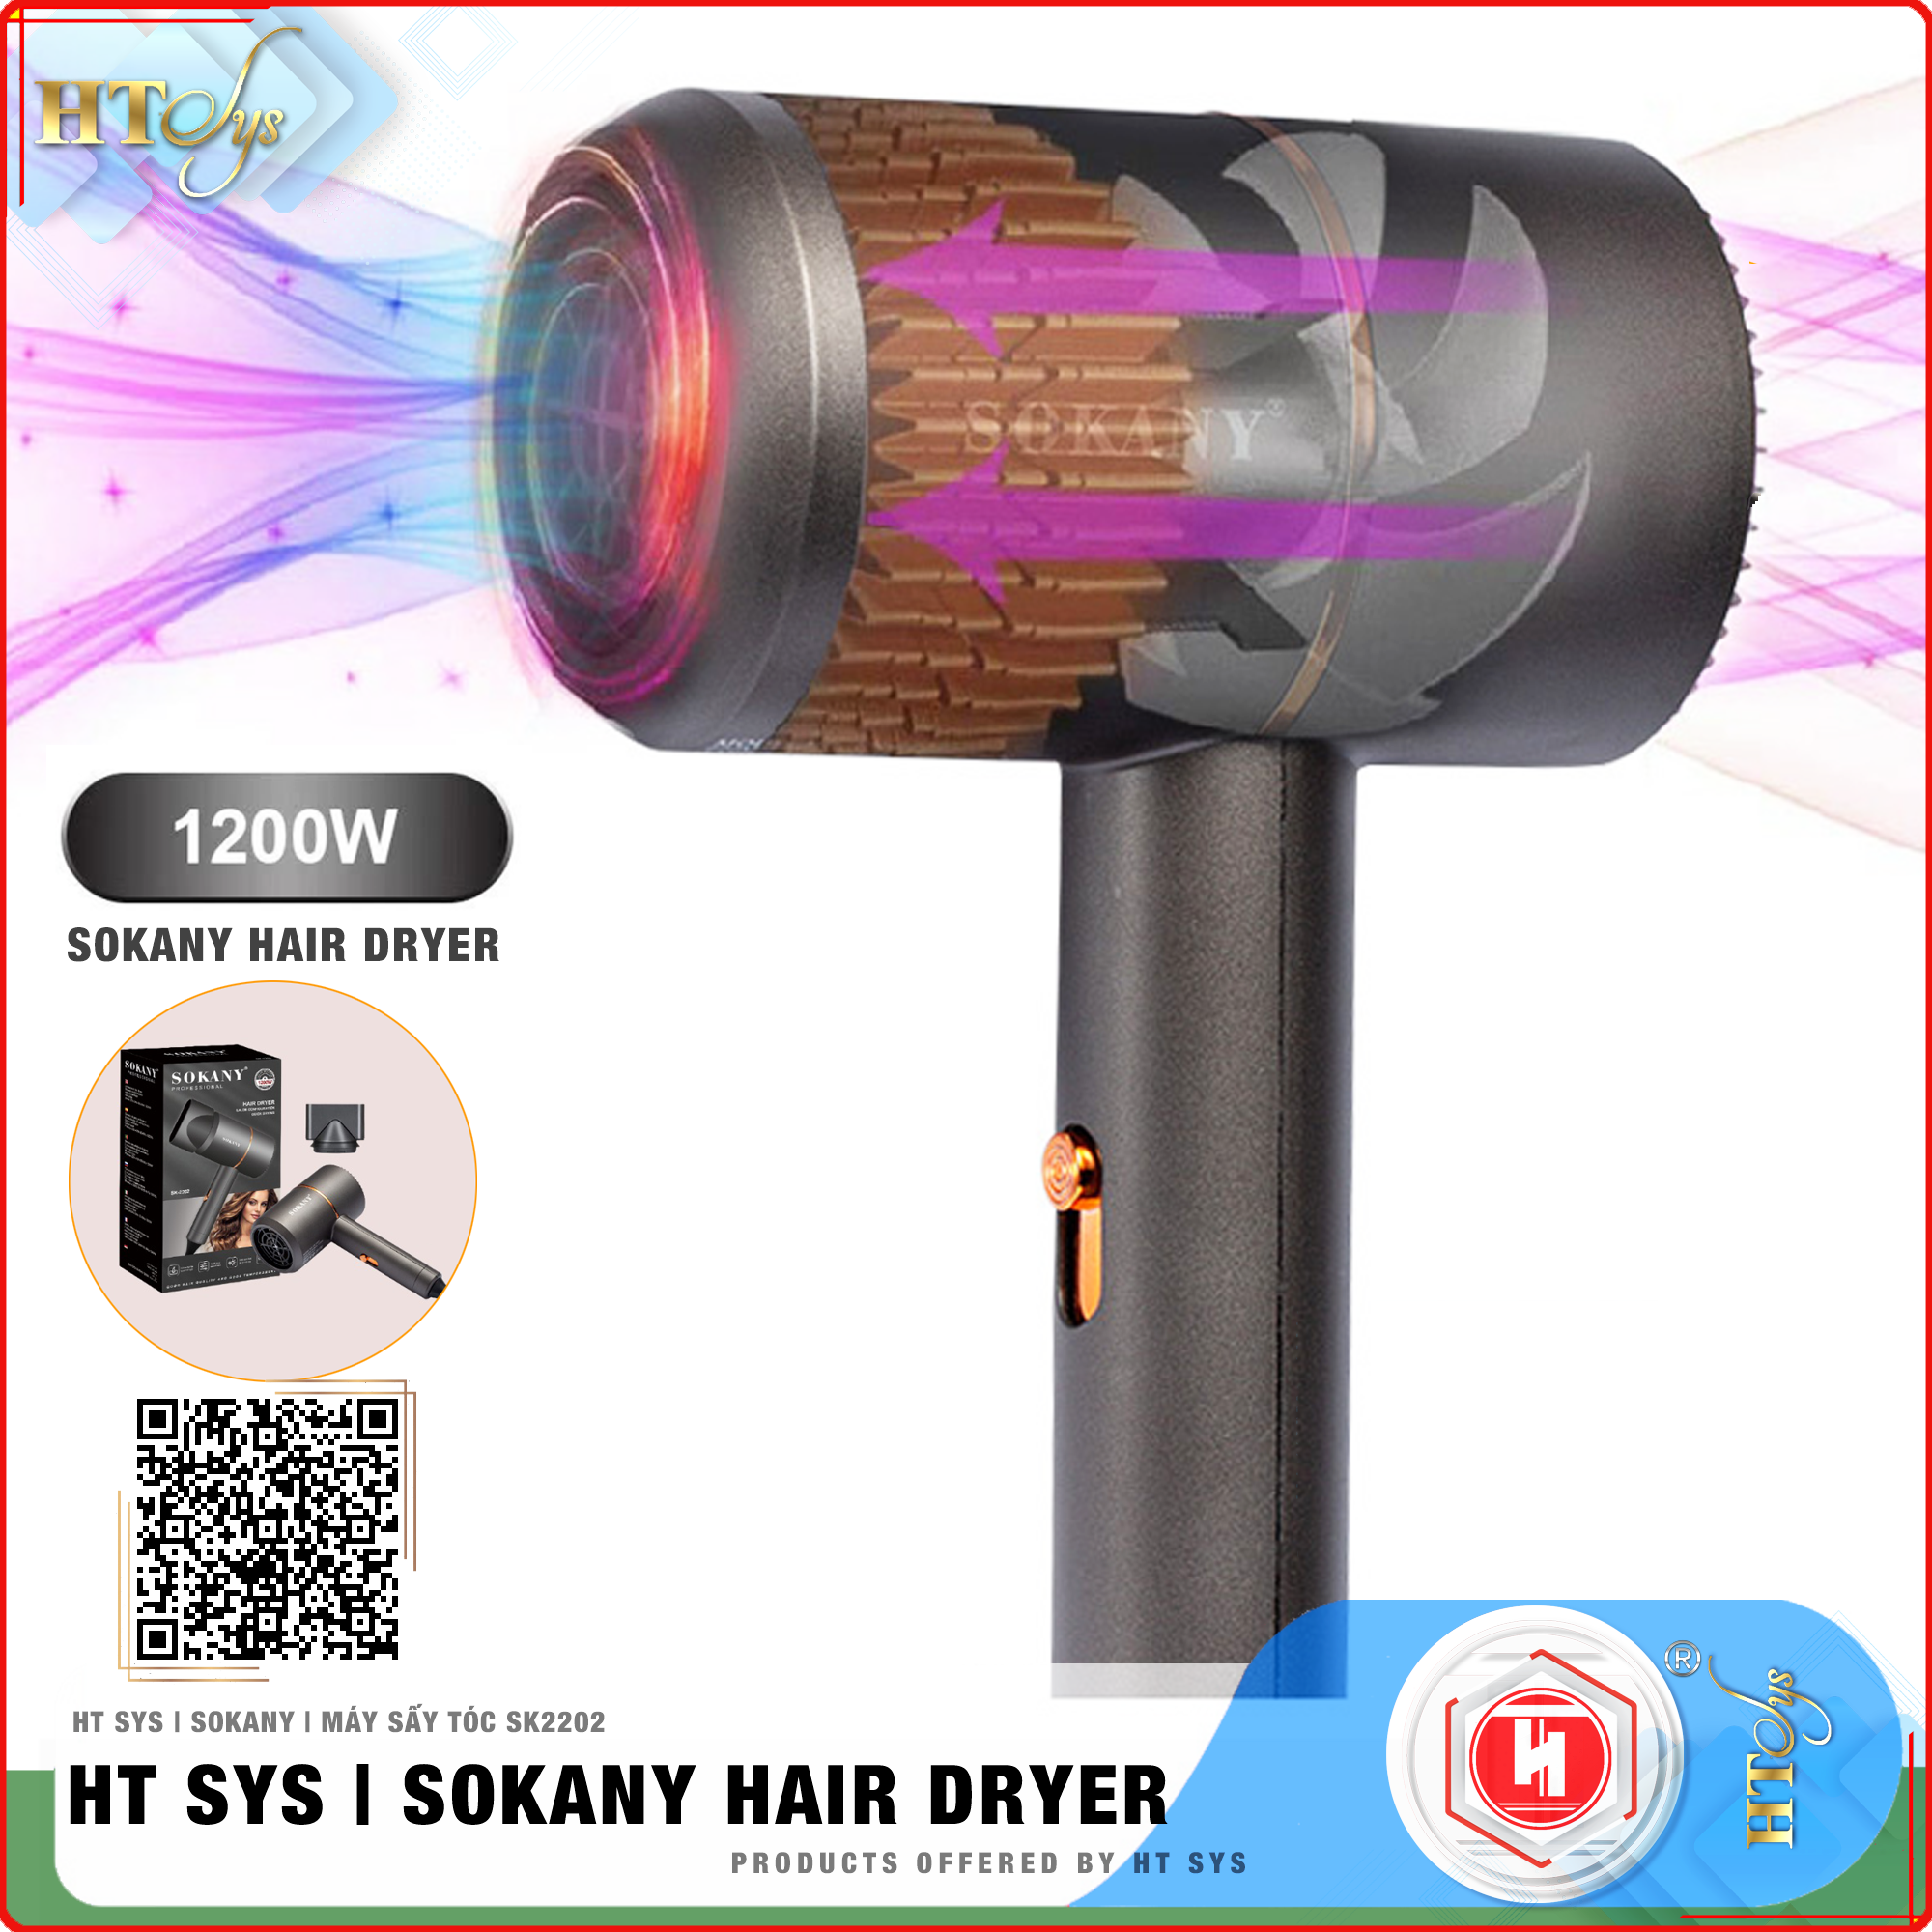 Máy sấy tóc ion âm HT SYS - SOKANY2202 - Kiểu dáng sang trọng, tiện lợi, công suất 1200W chuyên dụng tại nhà và hair salon - Máy sấy bổ sung ion dưỡng ẩm làm mềm mượt tóc - [Hàng Nhập Khẩu]